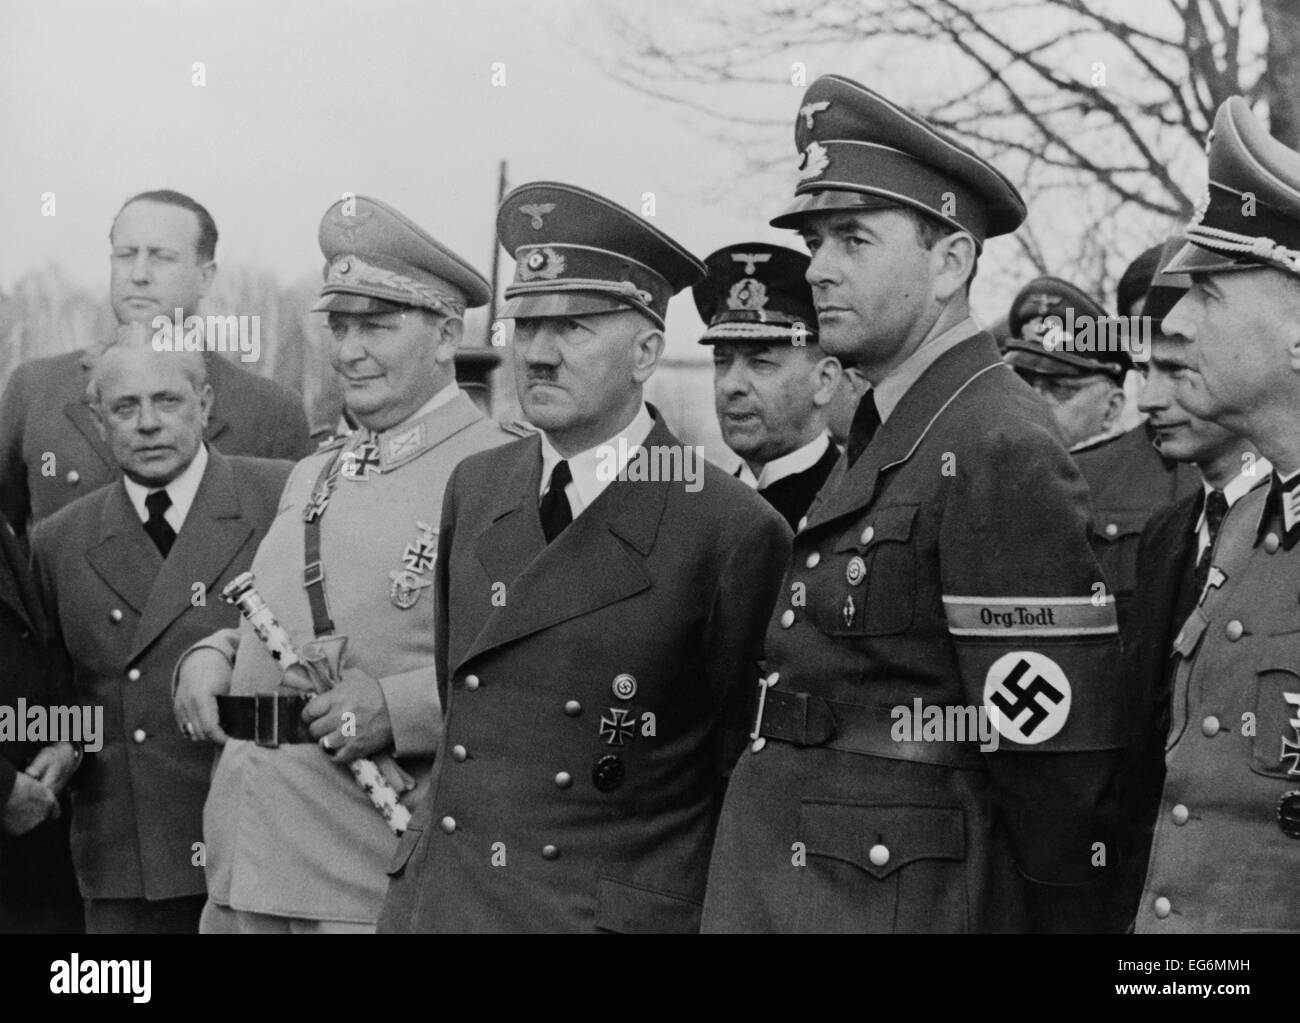 Adolf Hitler, flankiert von Hermann Goering und Albert Speer. Speer war Minister für Rüstung und Kriegsproduktion. Seine "Org.-Tölt" Stockfoto